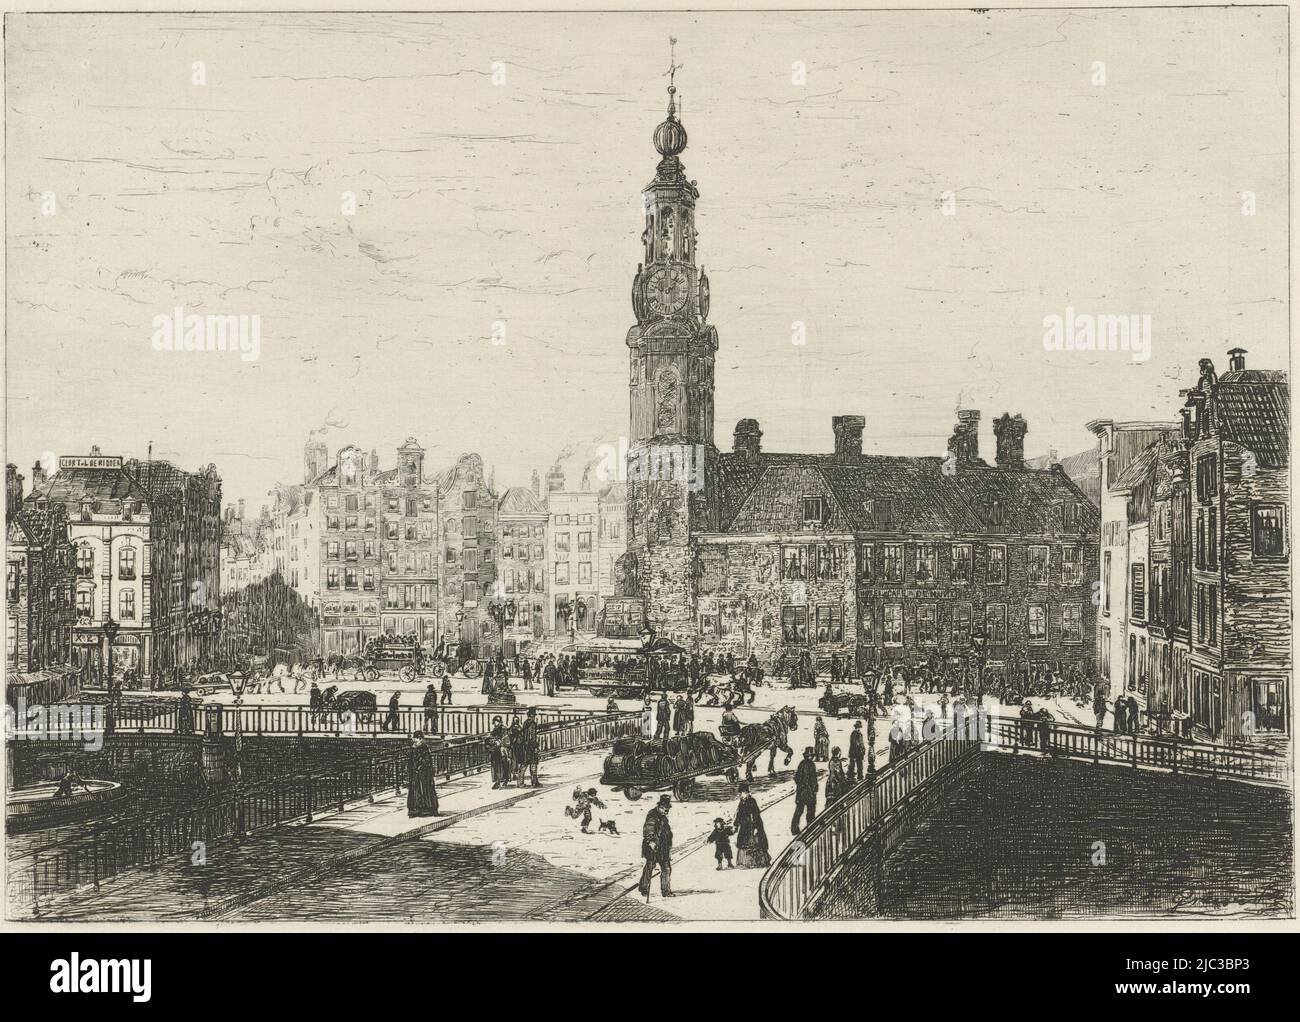 Vue de la place Muntplein d'Amsterdam avec la monnaie au milieu, vue de la place Muntplein d'Amsterdam, imprimeur: Johan Conrad Greive, (mentionné sur l'objet), Amsterdam, 1847 - 1891, papier, gravure, l 296 mm × h 197 mm Banque D'Images